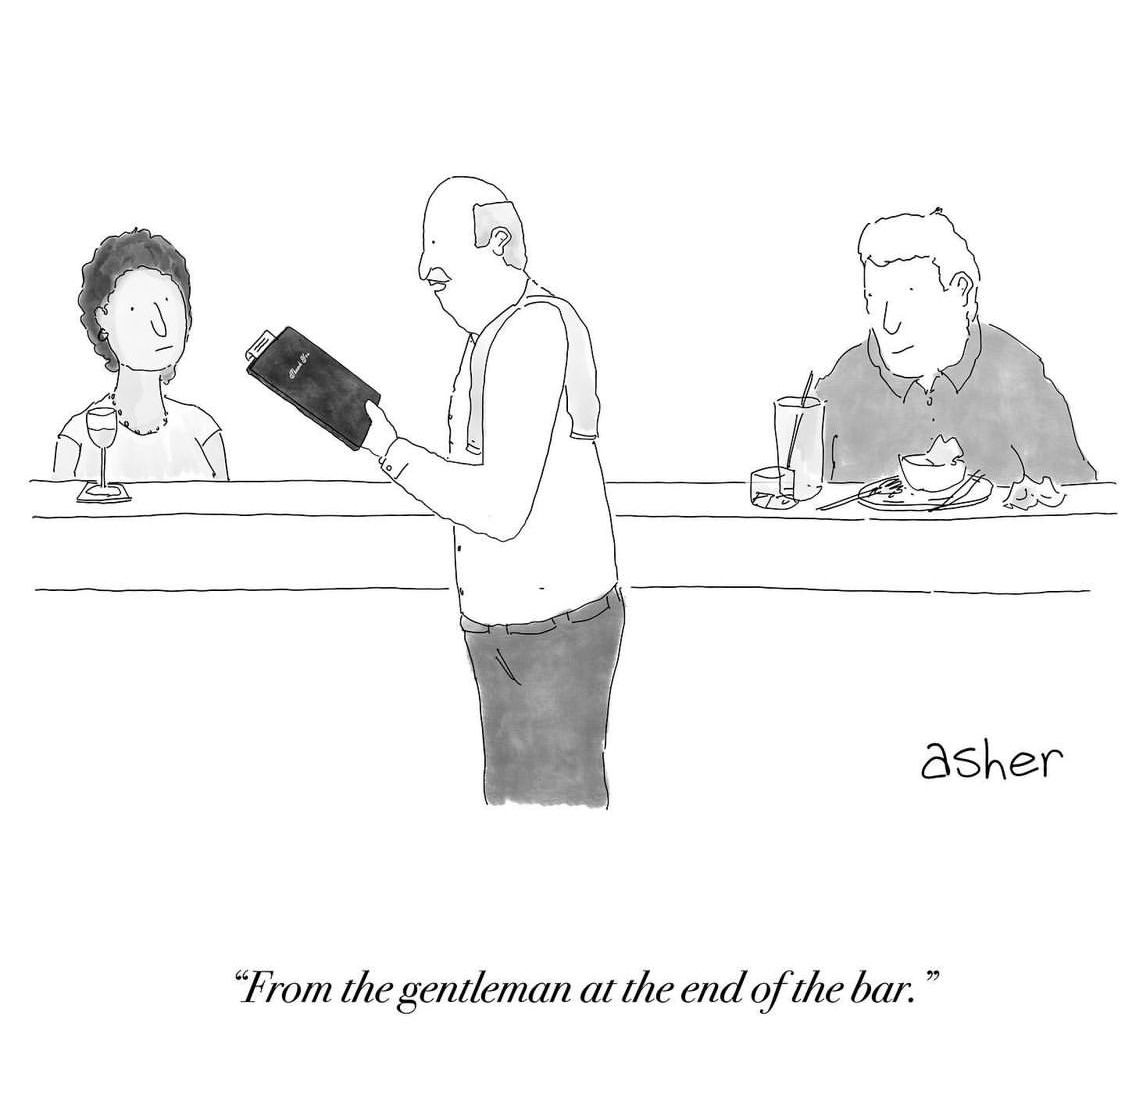 A New Yorker Cartoon about a Douchebag 2